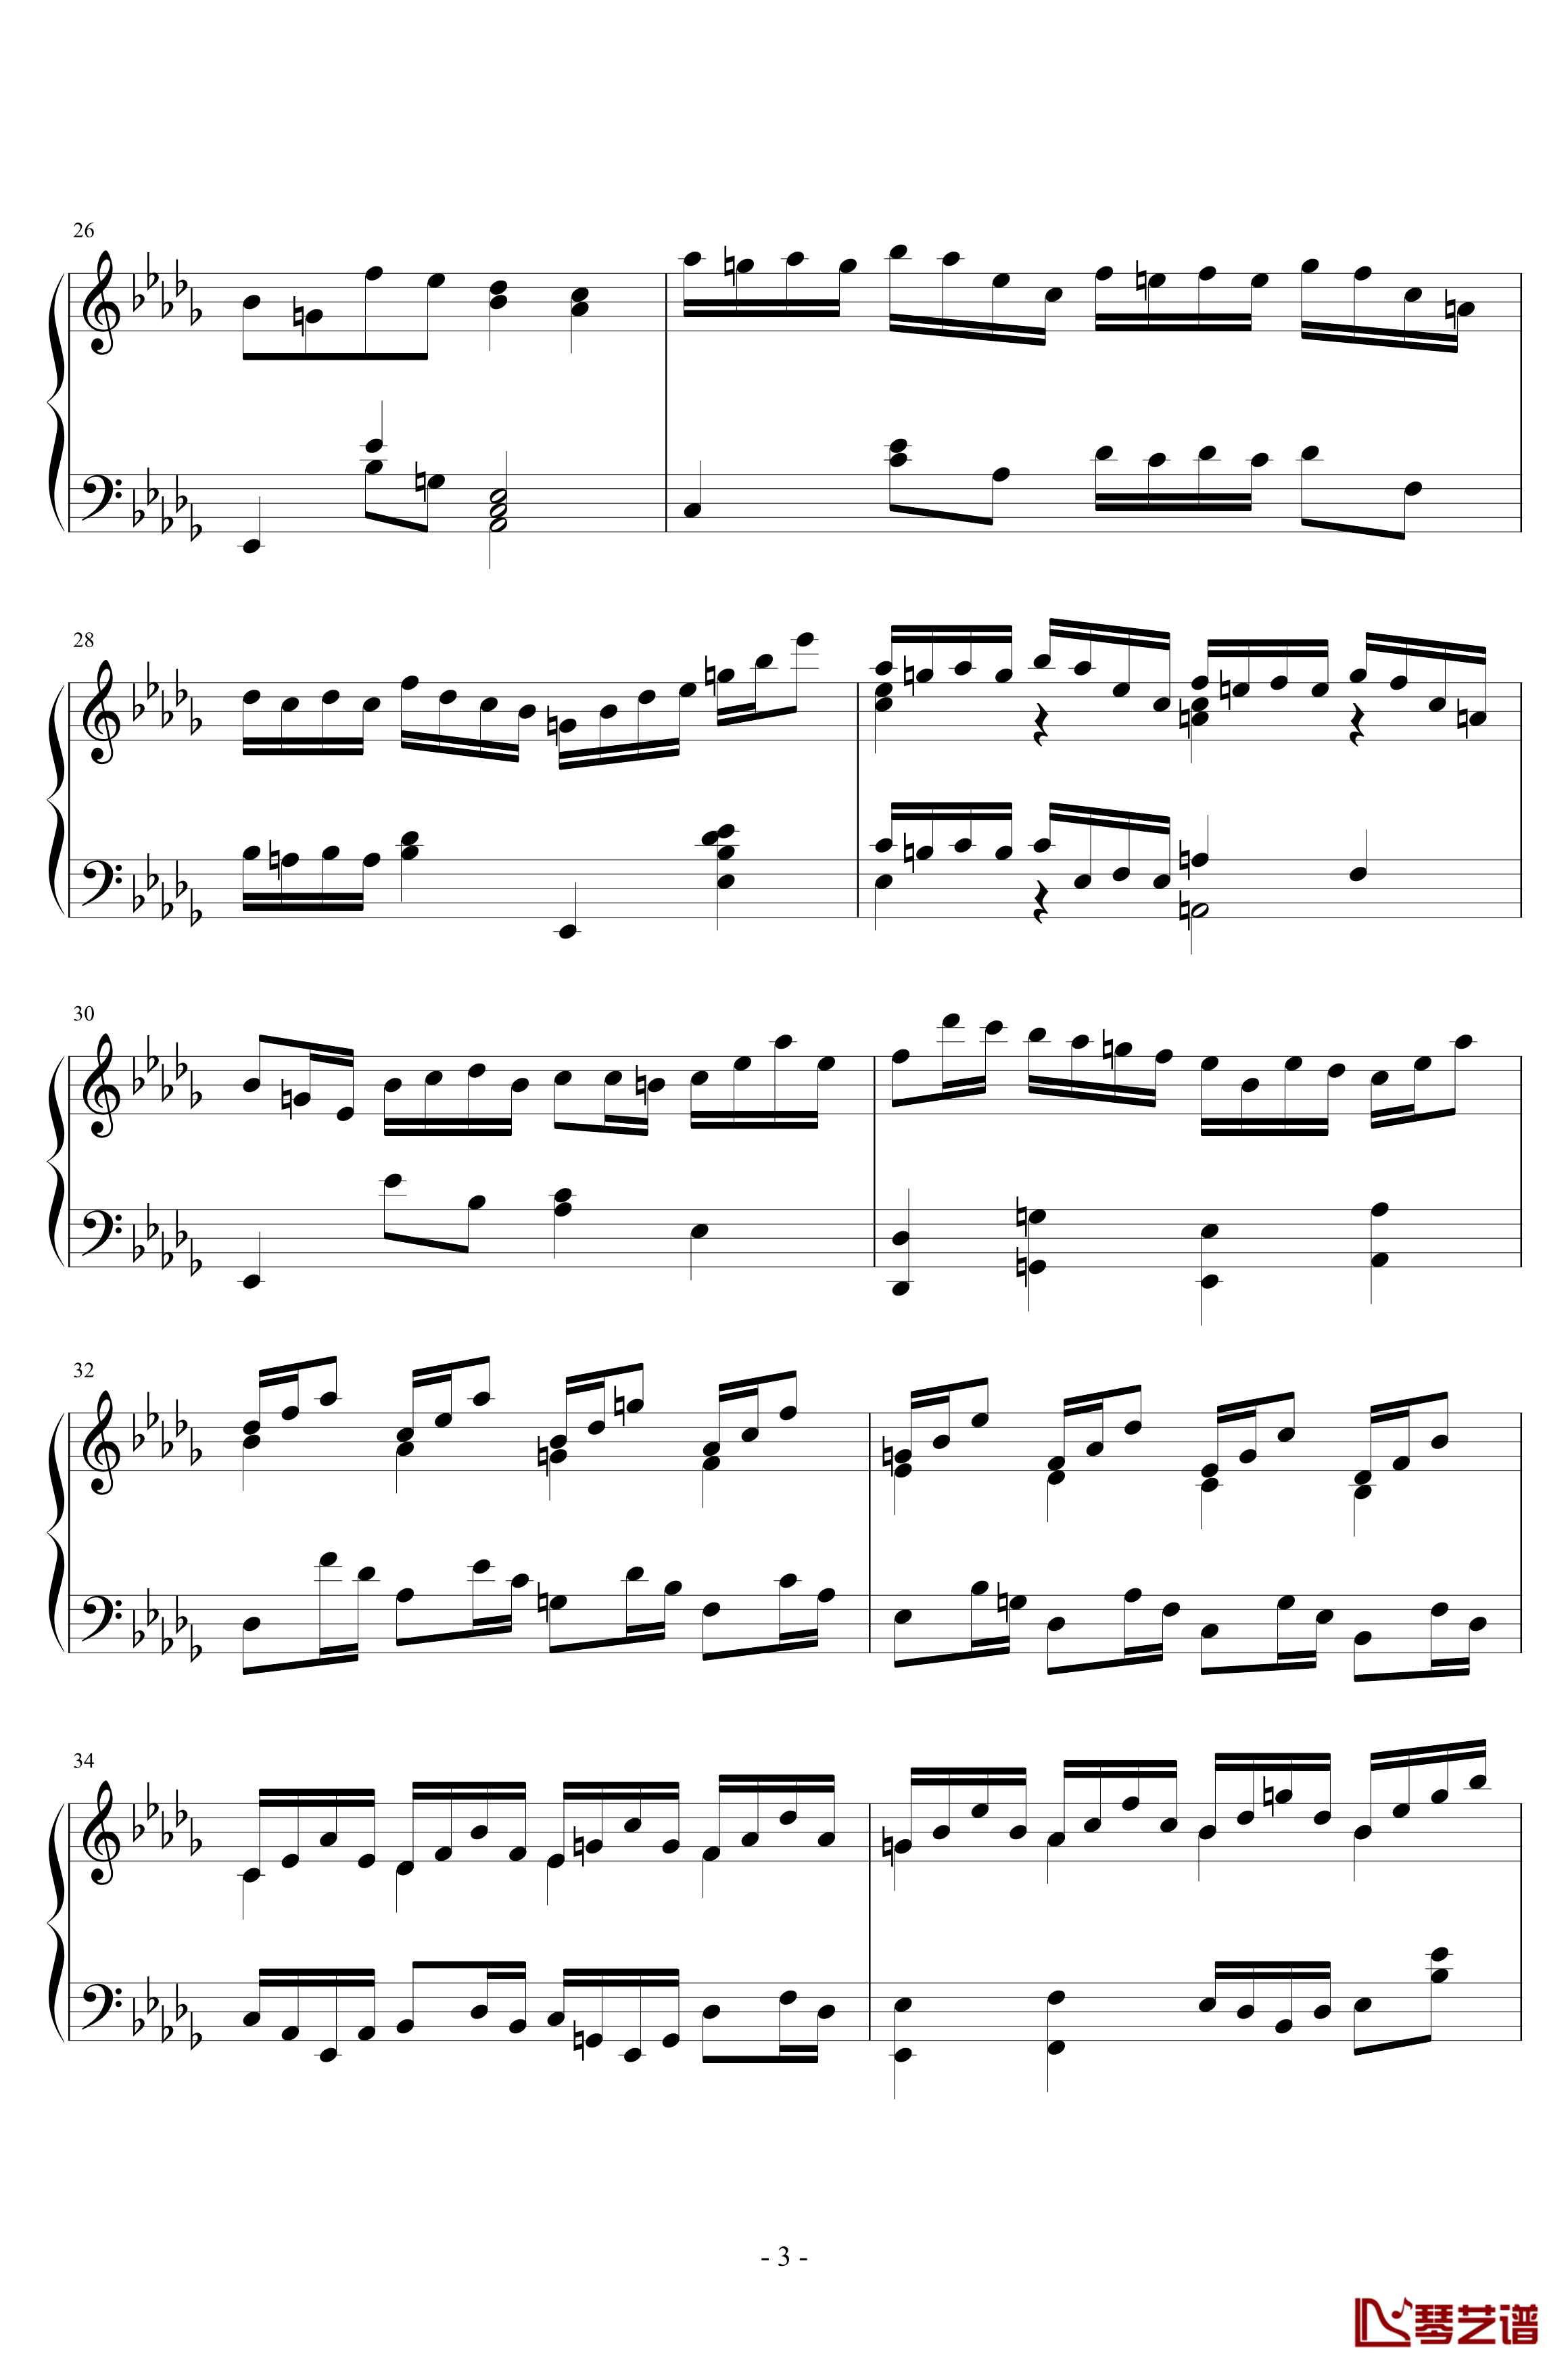 第二钢琴奏鸣曲第一乐章钢琴谱-nzh19343